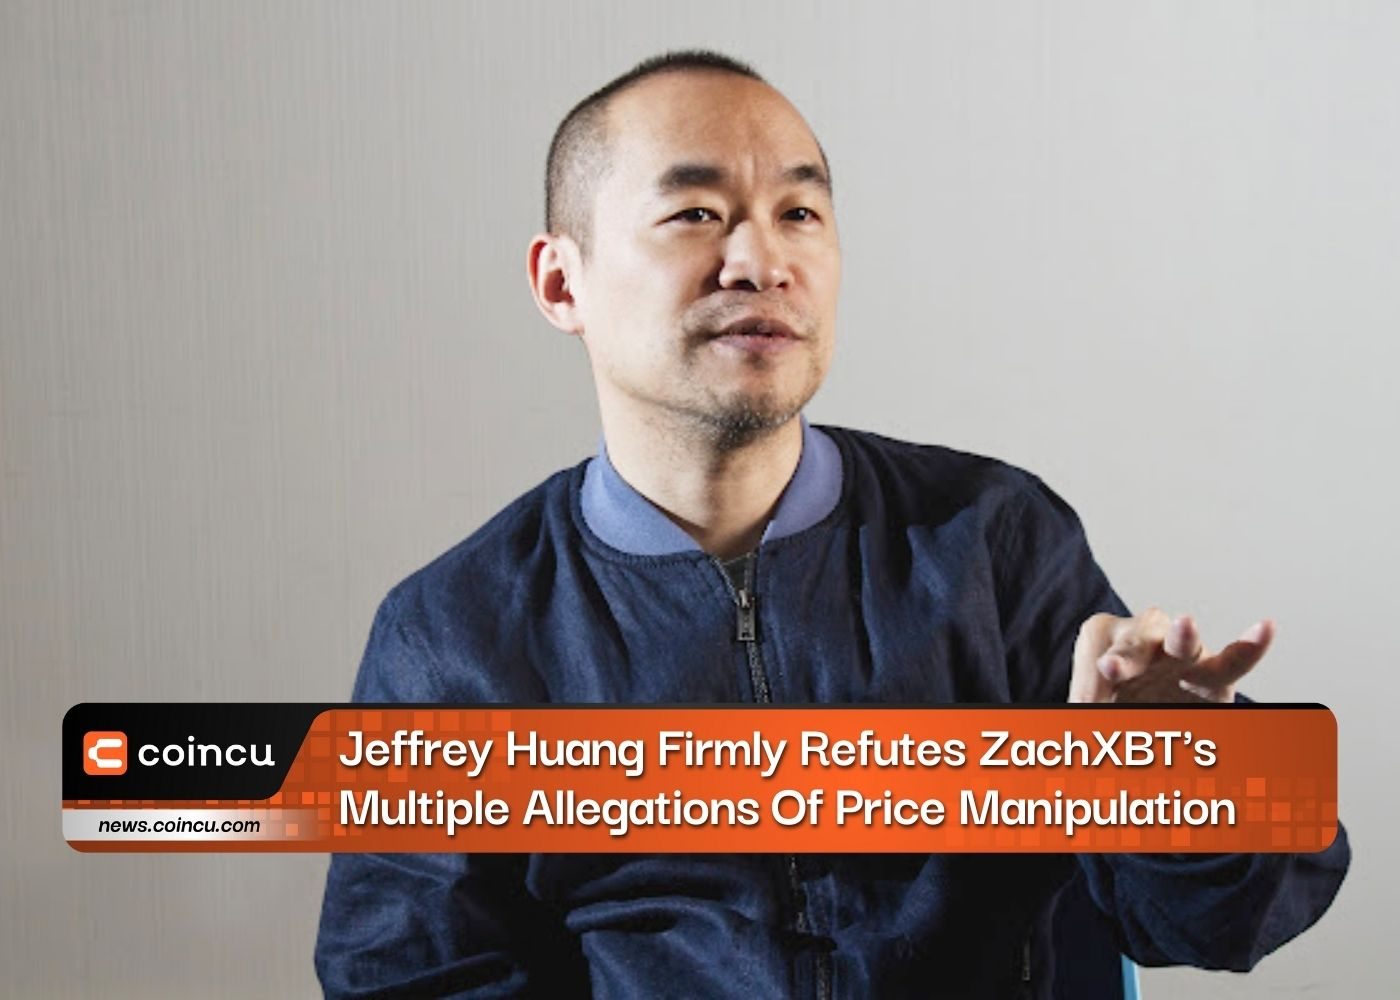 Jeffrey Huang weist ZachXBTs mehrfache Vorwürfe der Preismanipulation entschieden zurück